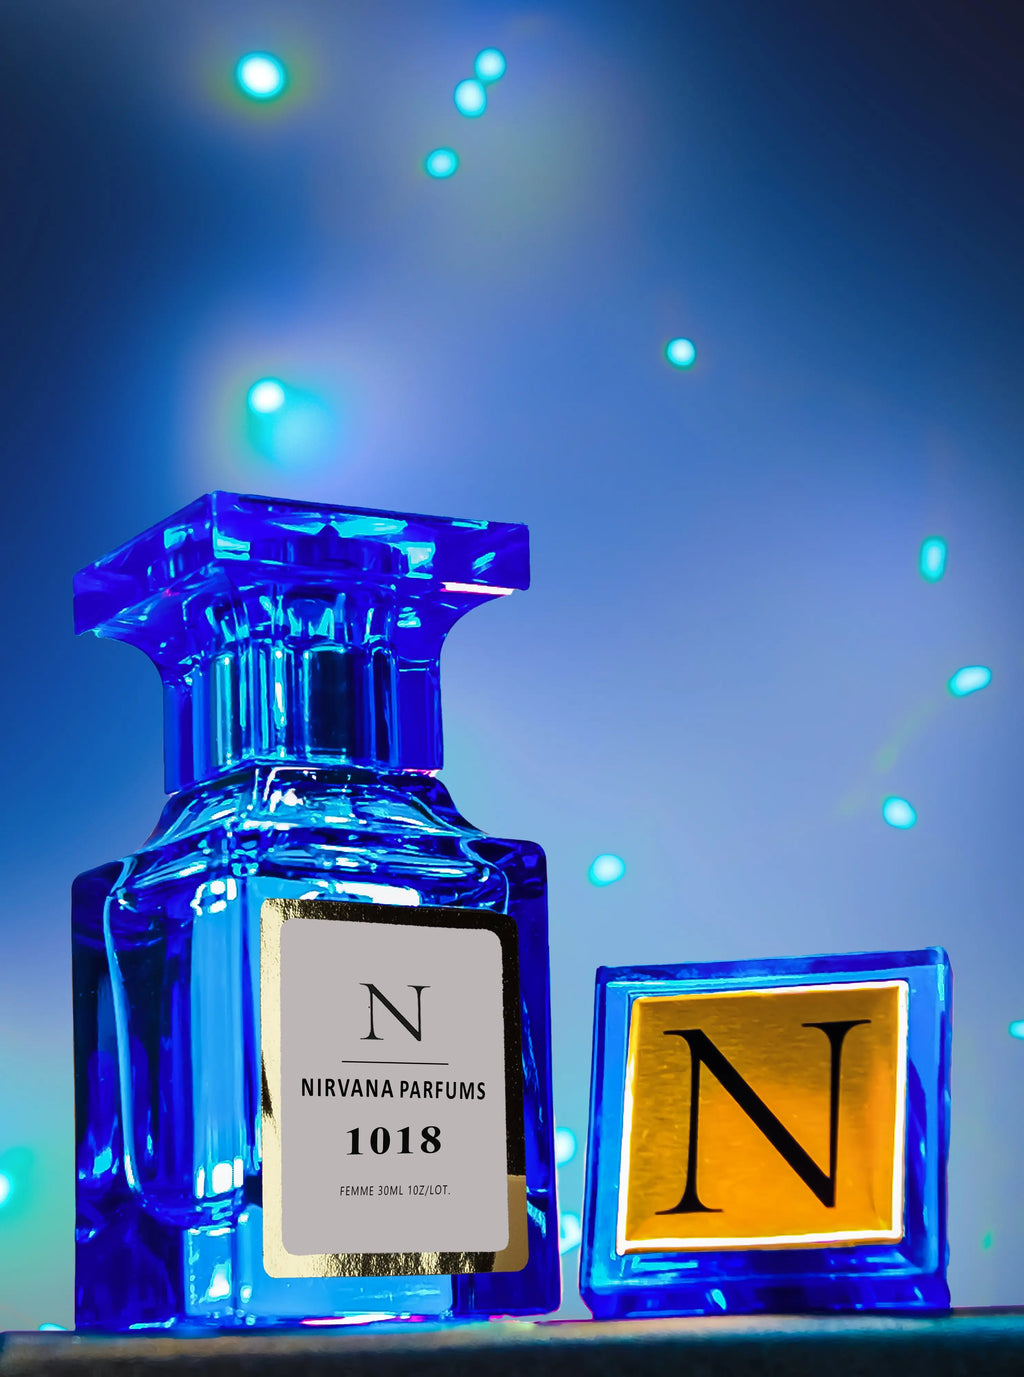 NIRVANA GOLD LINE 1018 similar a Baccarat Rouge 540 Extrait de Parfum. Unisex. www.nirvanaparfums.es